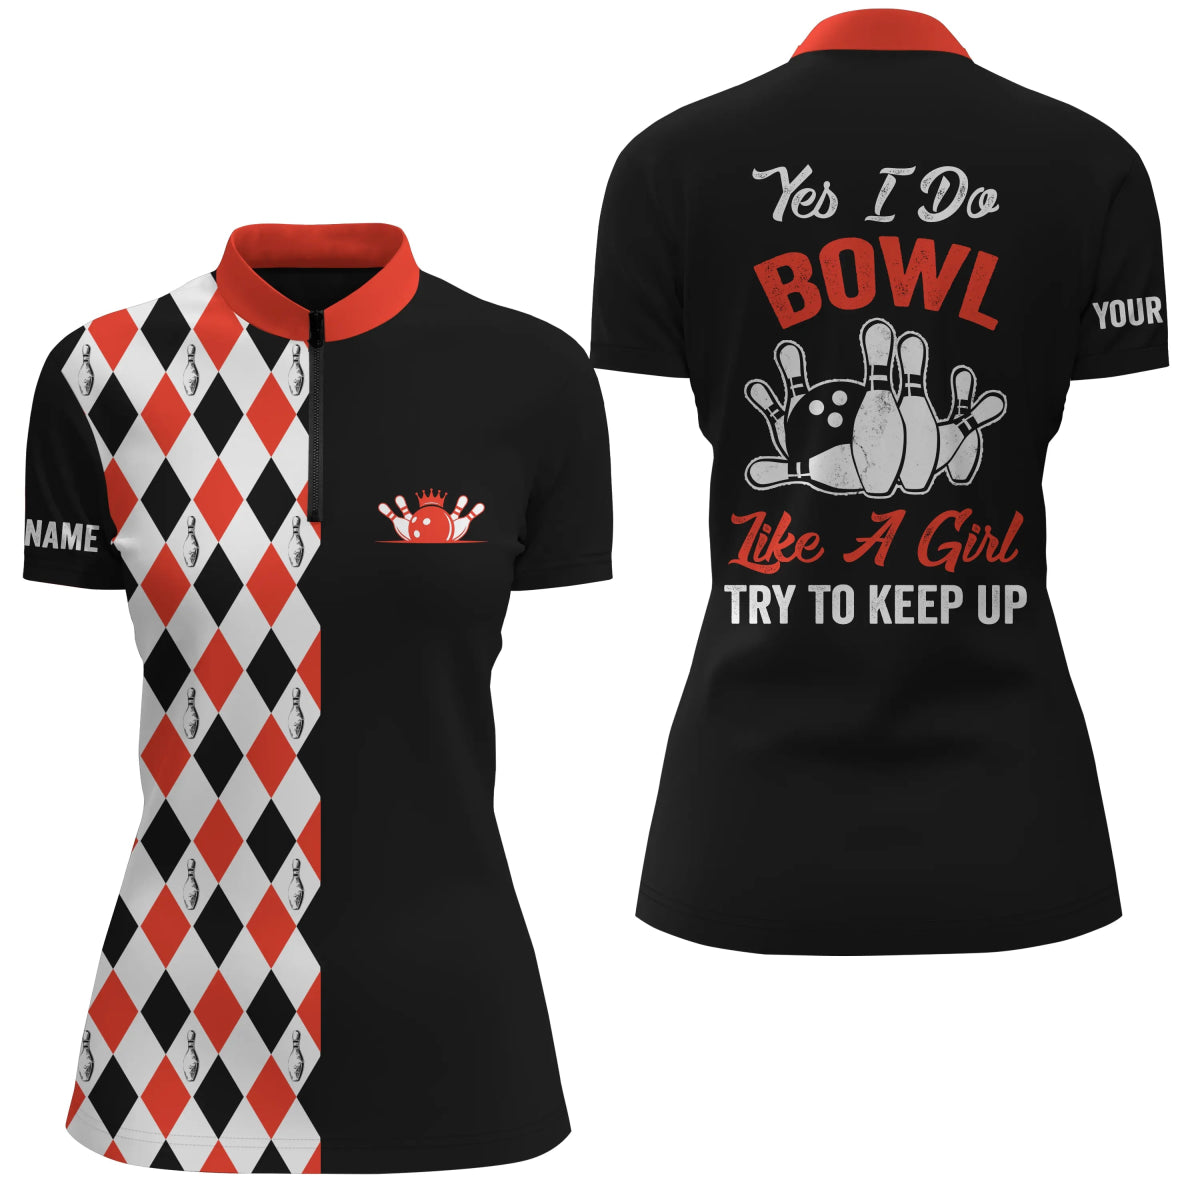 Schwarze rote Viertel-Reißverschluss-Bowlinghemden für Frauen mit individuellem Namen "Ja, ich bowle wie ein Mädchen, versuch mitzuhalten" Q4791 - Climcat